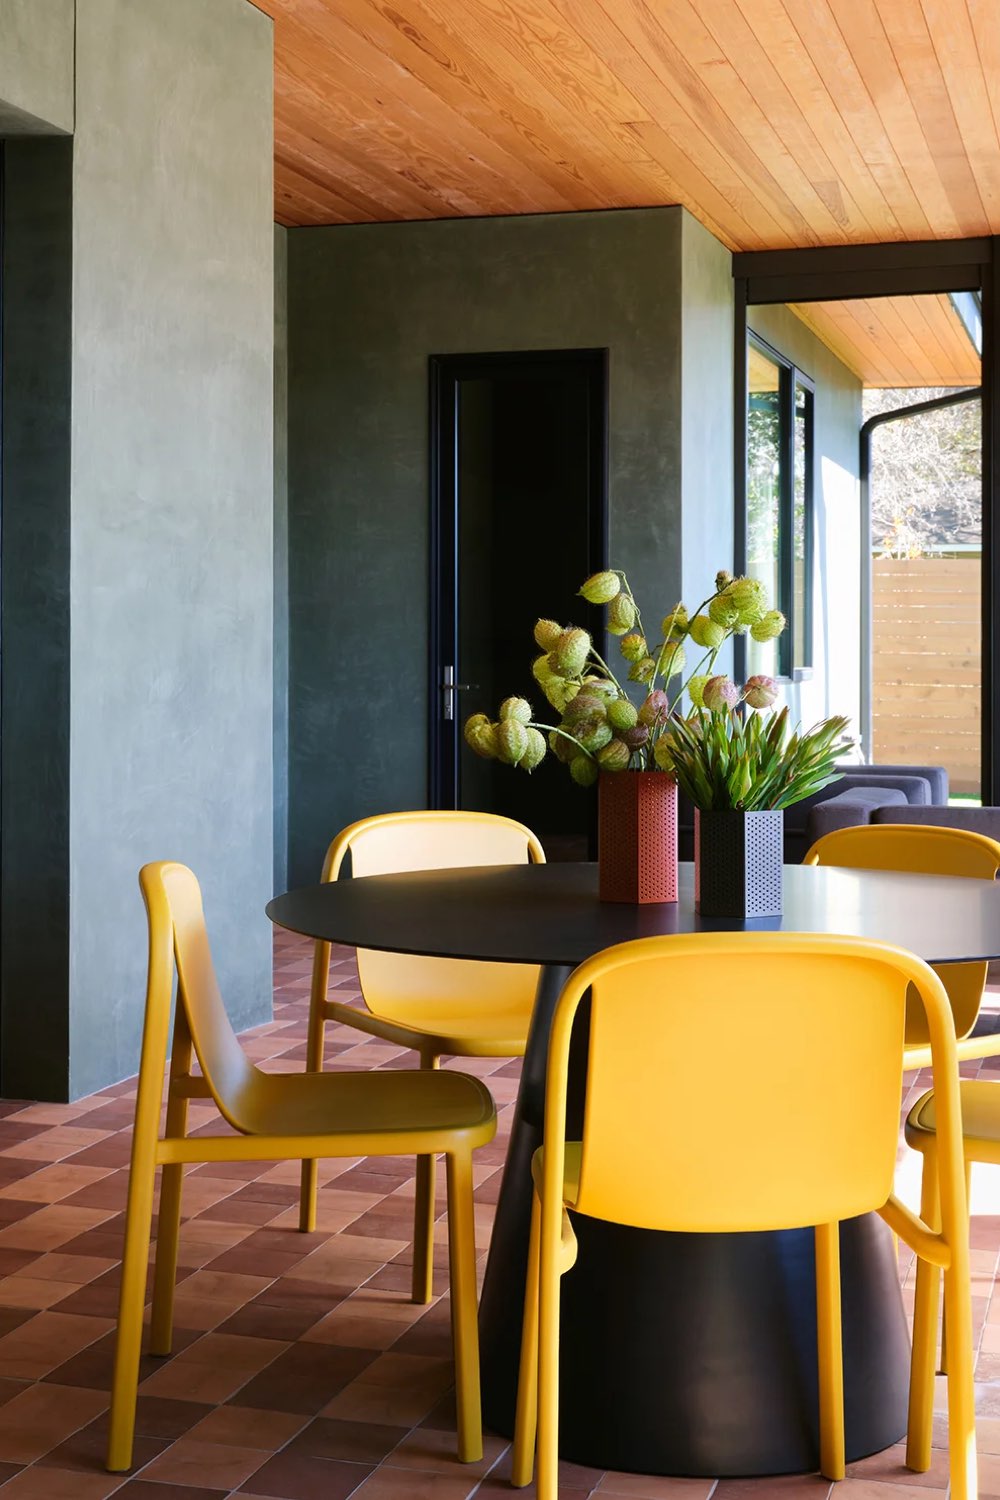 visite interieur maison decor moderne et classique chic coin salle à manger table noire ronde moderne chaise colorée jaune mur chic anthracite et revêtement original plafond